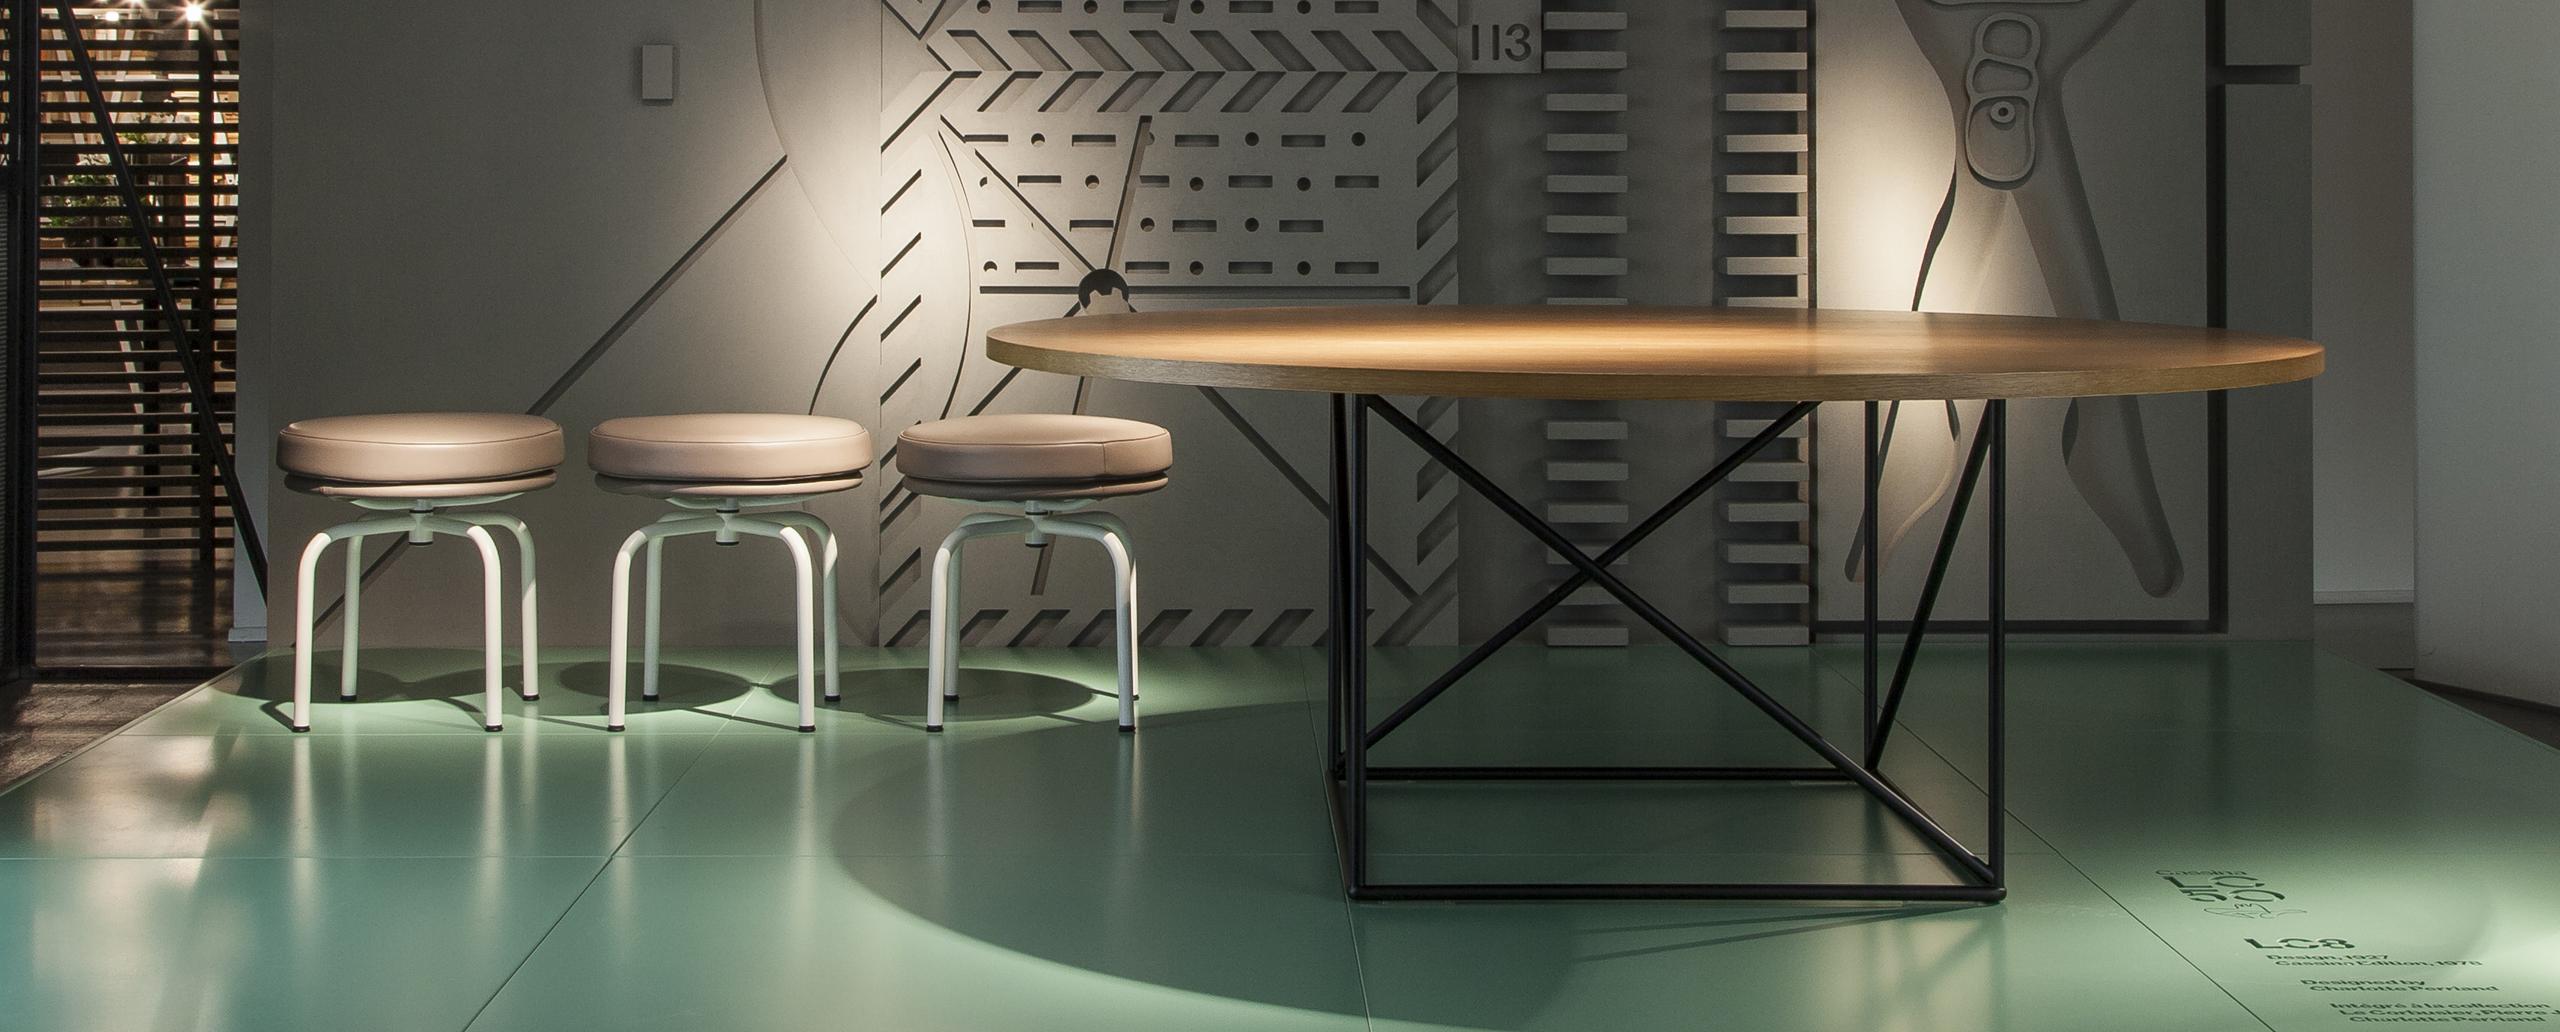 Tisch nach einem Entwurf von Le Corbusier aus dem Jahr 1958. Neu aufgelegt im Jahr 2010.
Hergestellt von Cassina in Italien.

Dieser organische und doch rationale Tisch wurde 1958 von Le Corbusier entworfen. Seine charakteristische Konstruktion